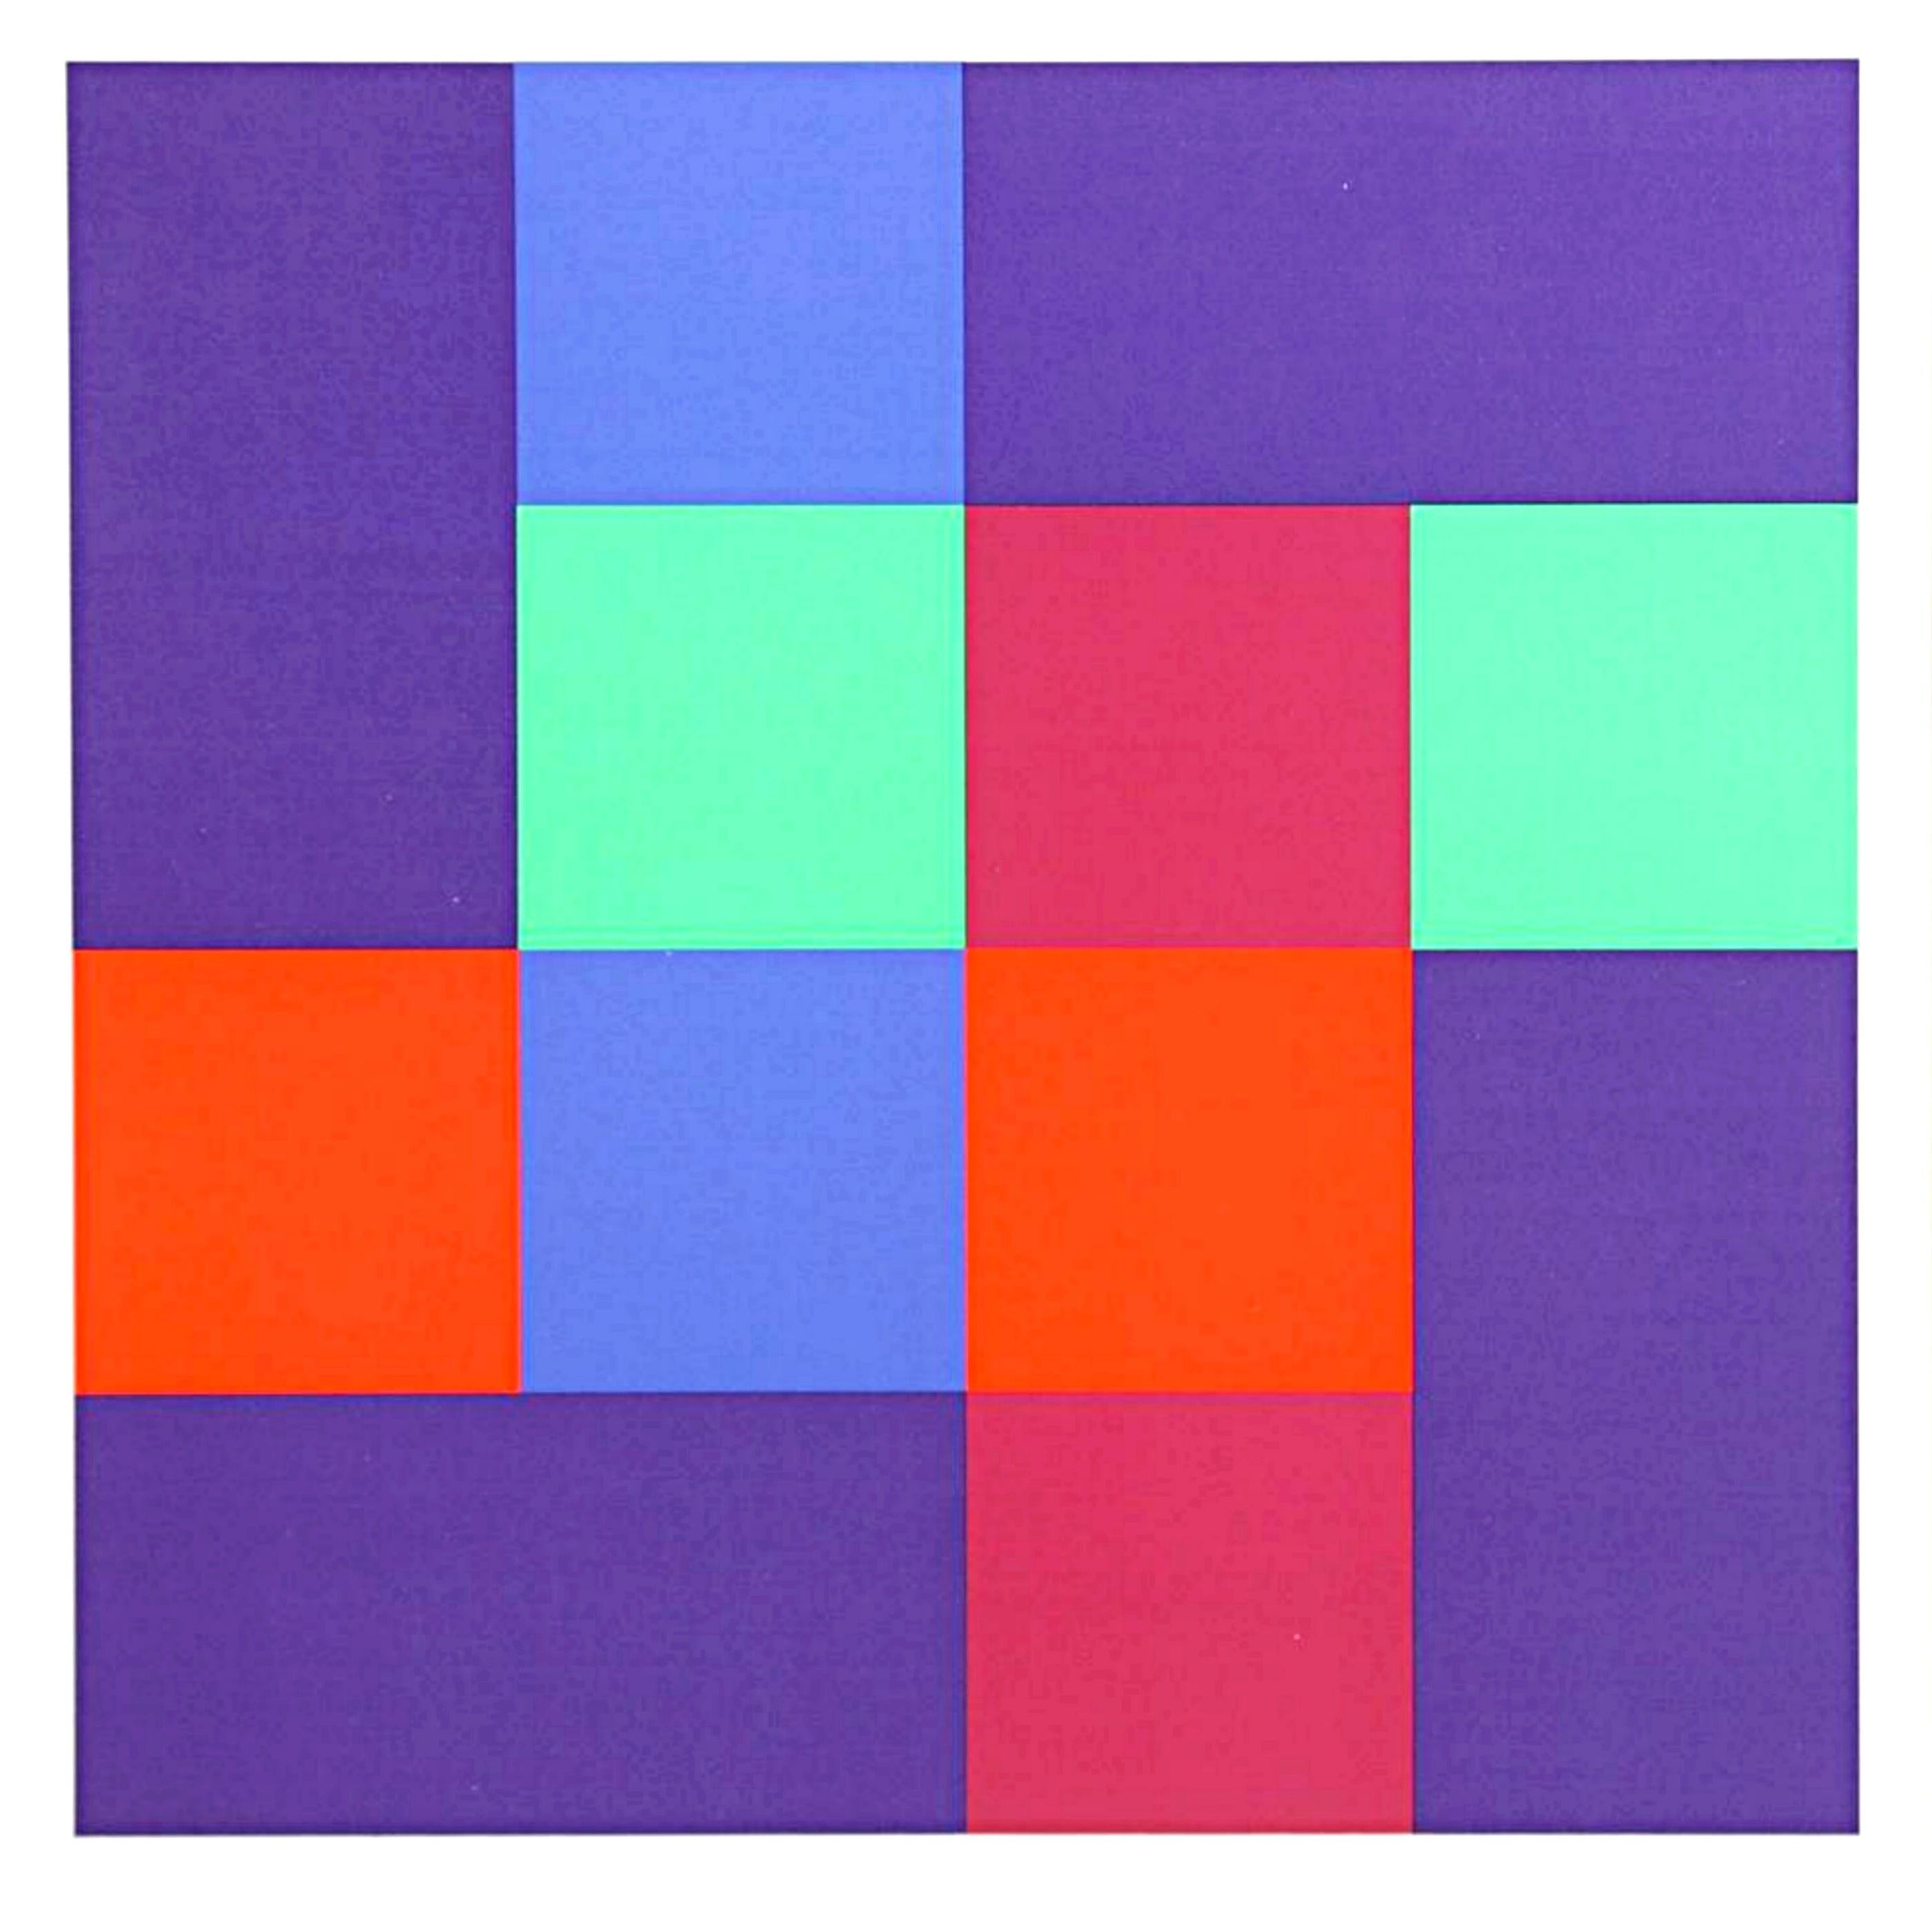 Siebdruck: Acht ergänzende Quadrate mit vier Rechtecken und geometrischer Abstraktion in Rechteck – Print von Richard Paul Lohse